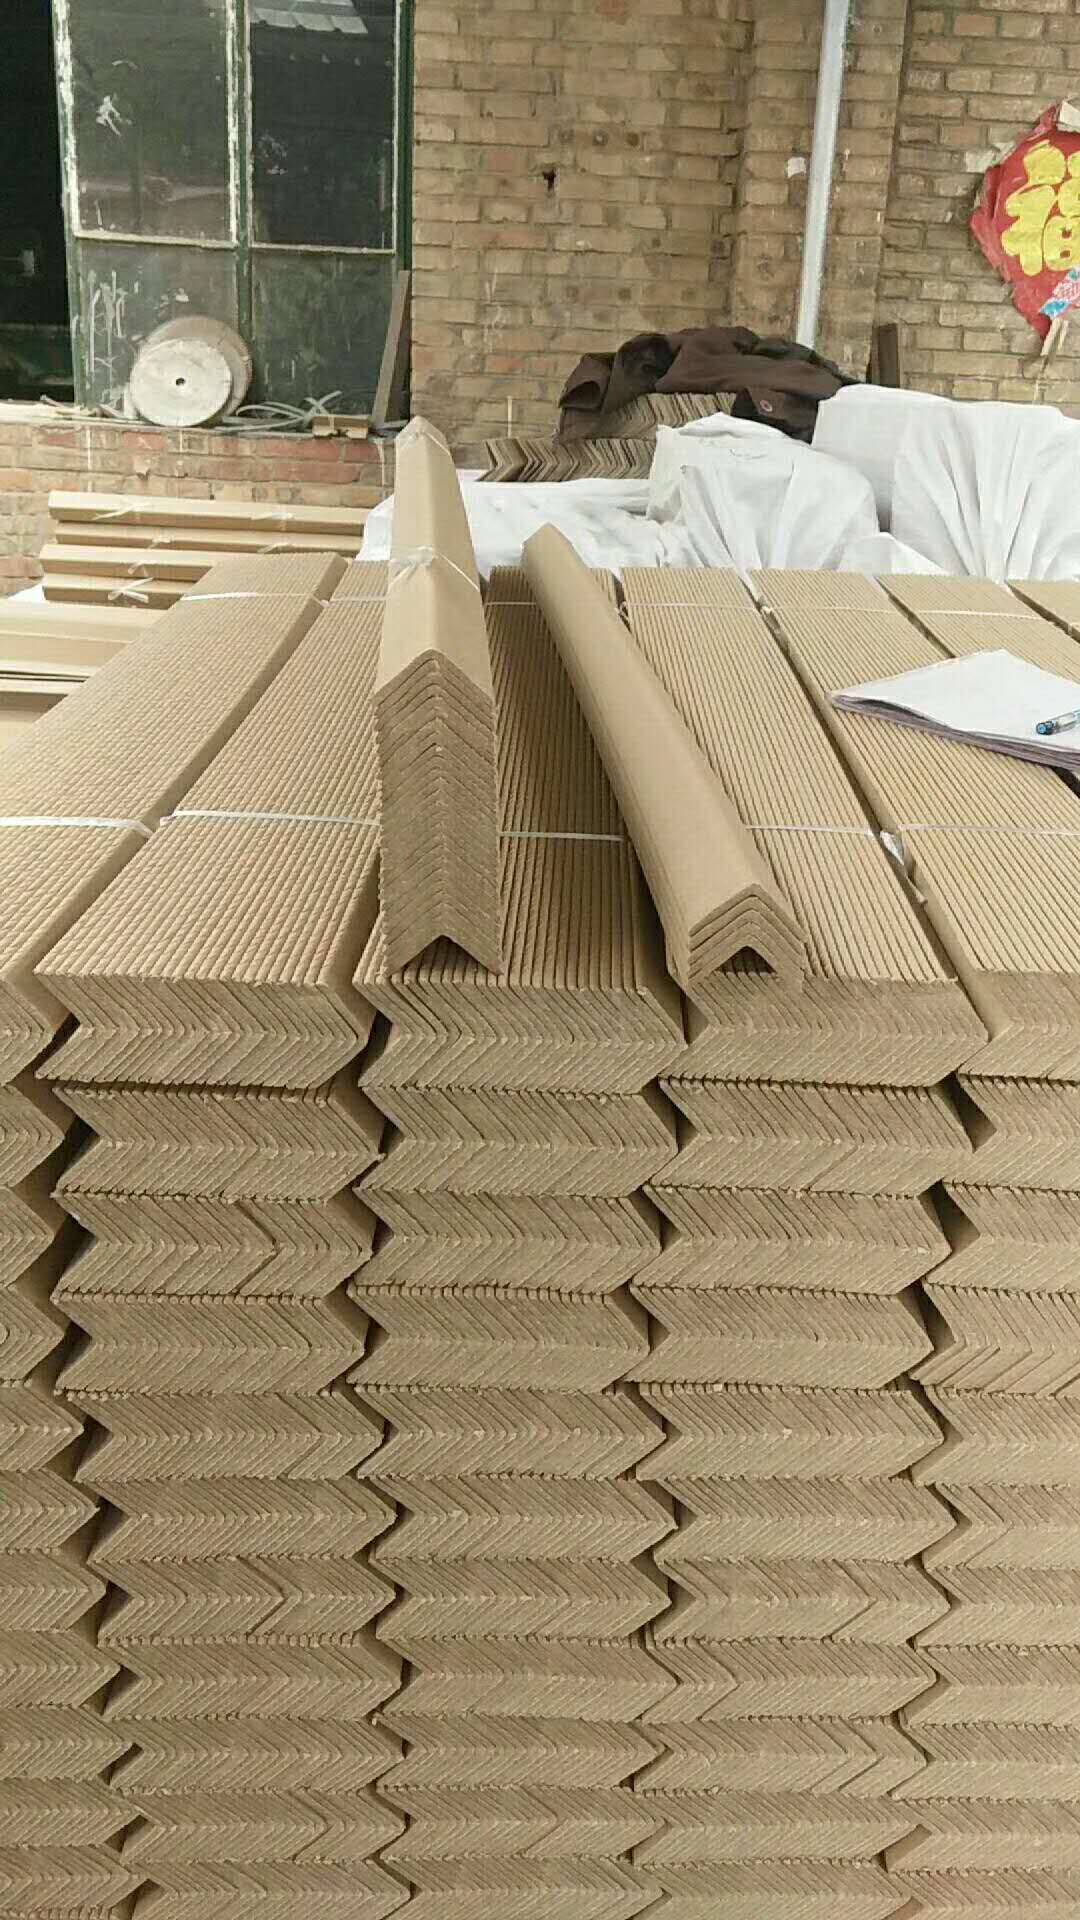 纸护角生产厂家北京纸护角厂家 优质纸护角厂家 纸护角生产厂家